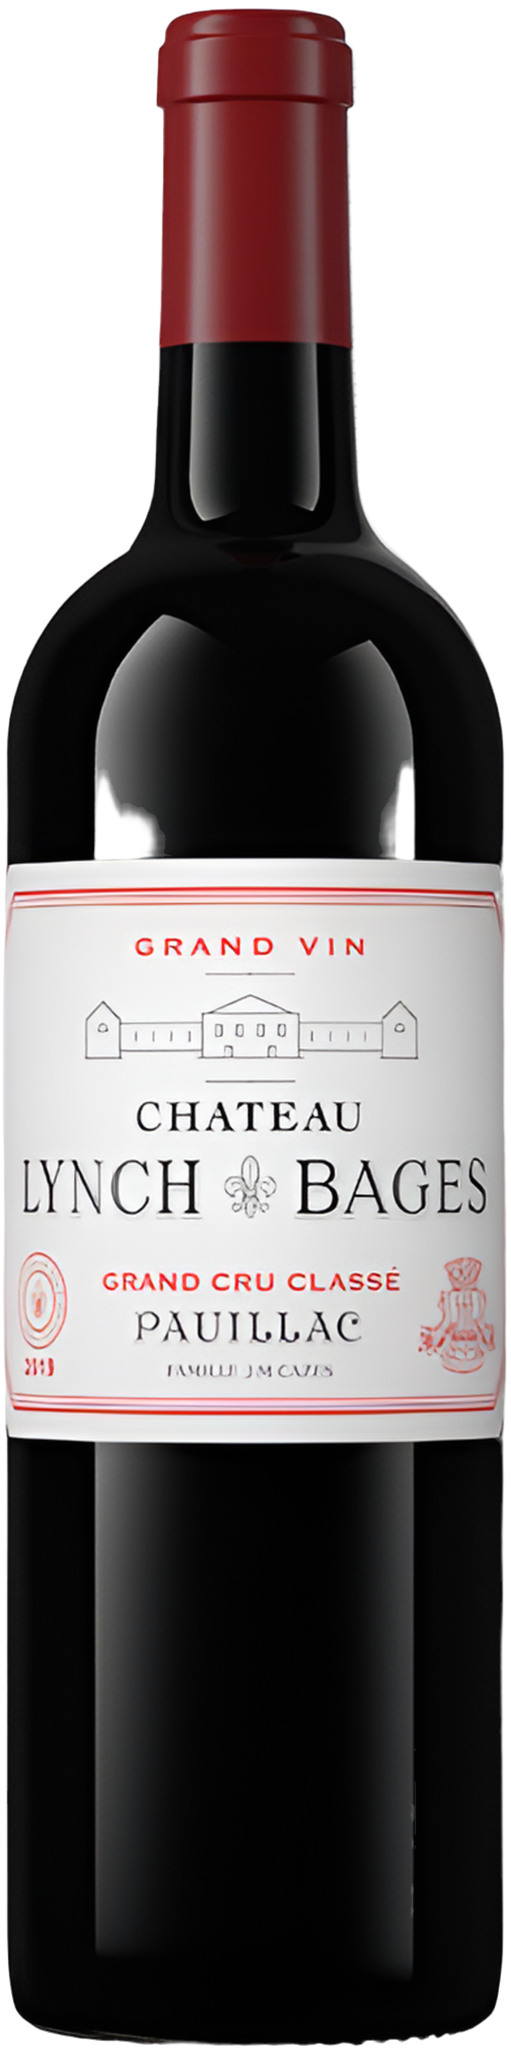 Château Lynch-Bages Pauillac 2019